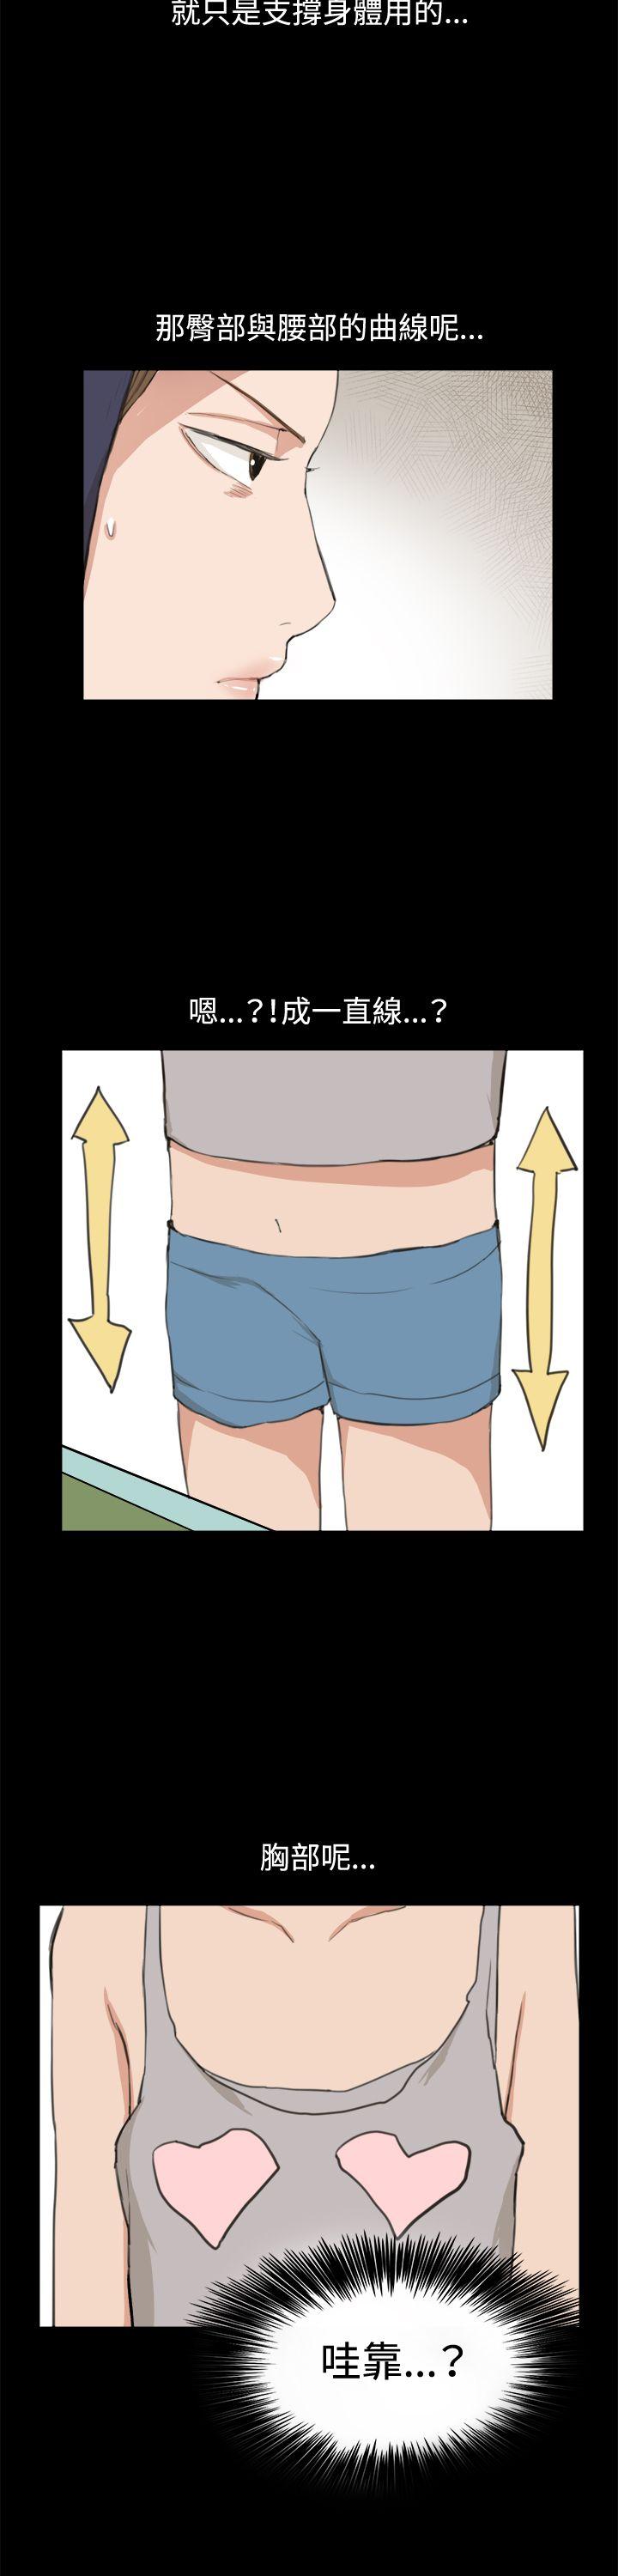 韩国污漫画 深夜便利店 第9话 2